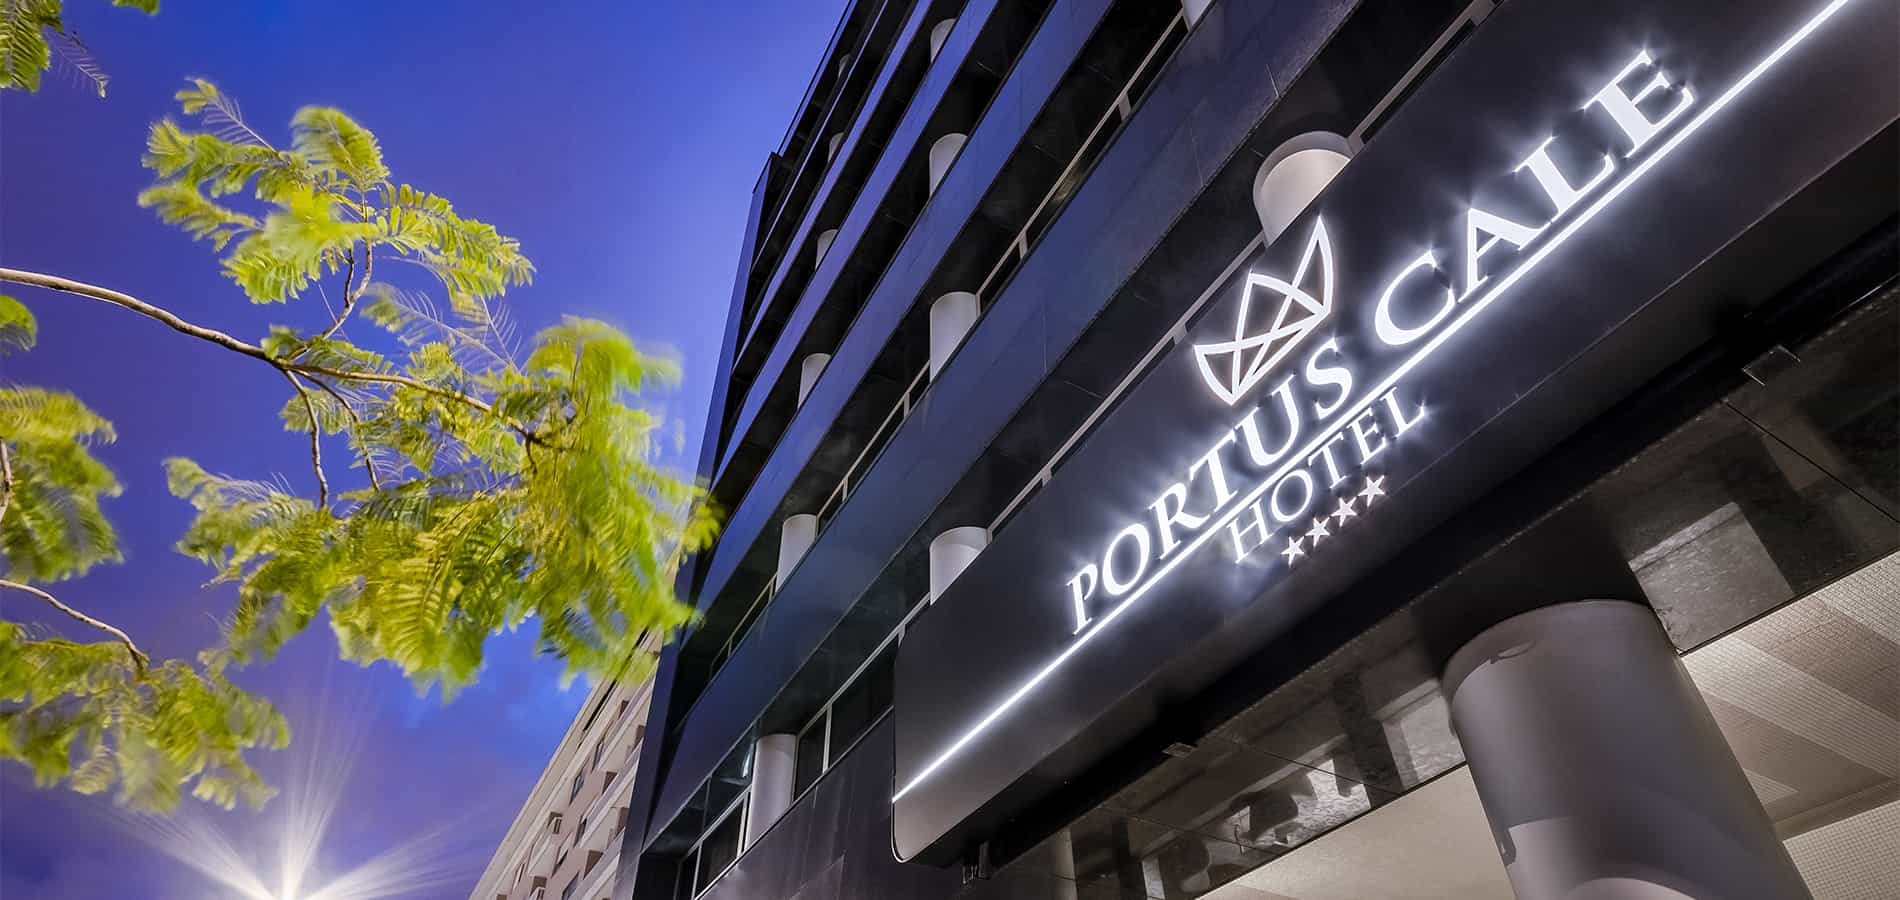 Portus Cale Hotel